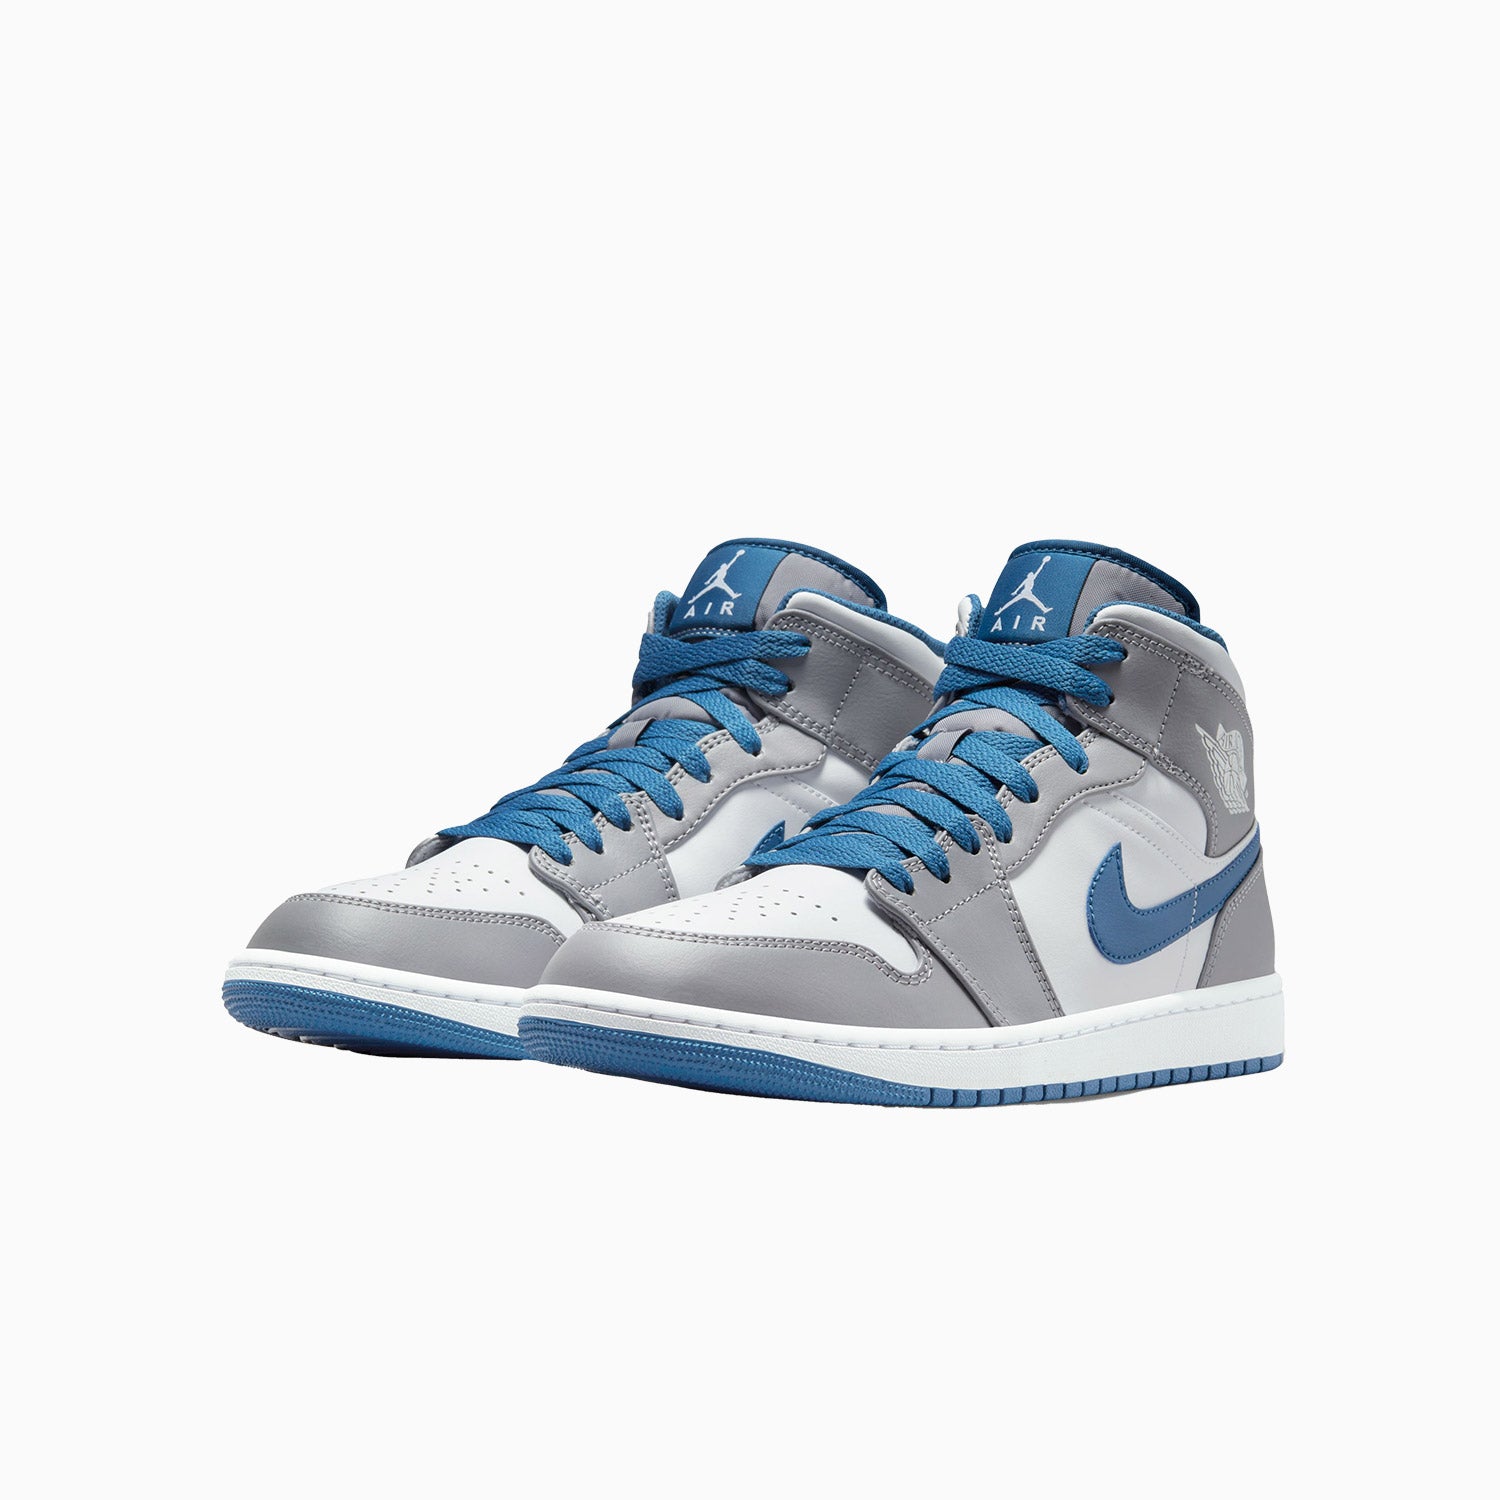 mens-air-jordan-1-mid-true-blue-shoes-dq8426-014